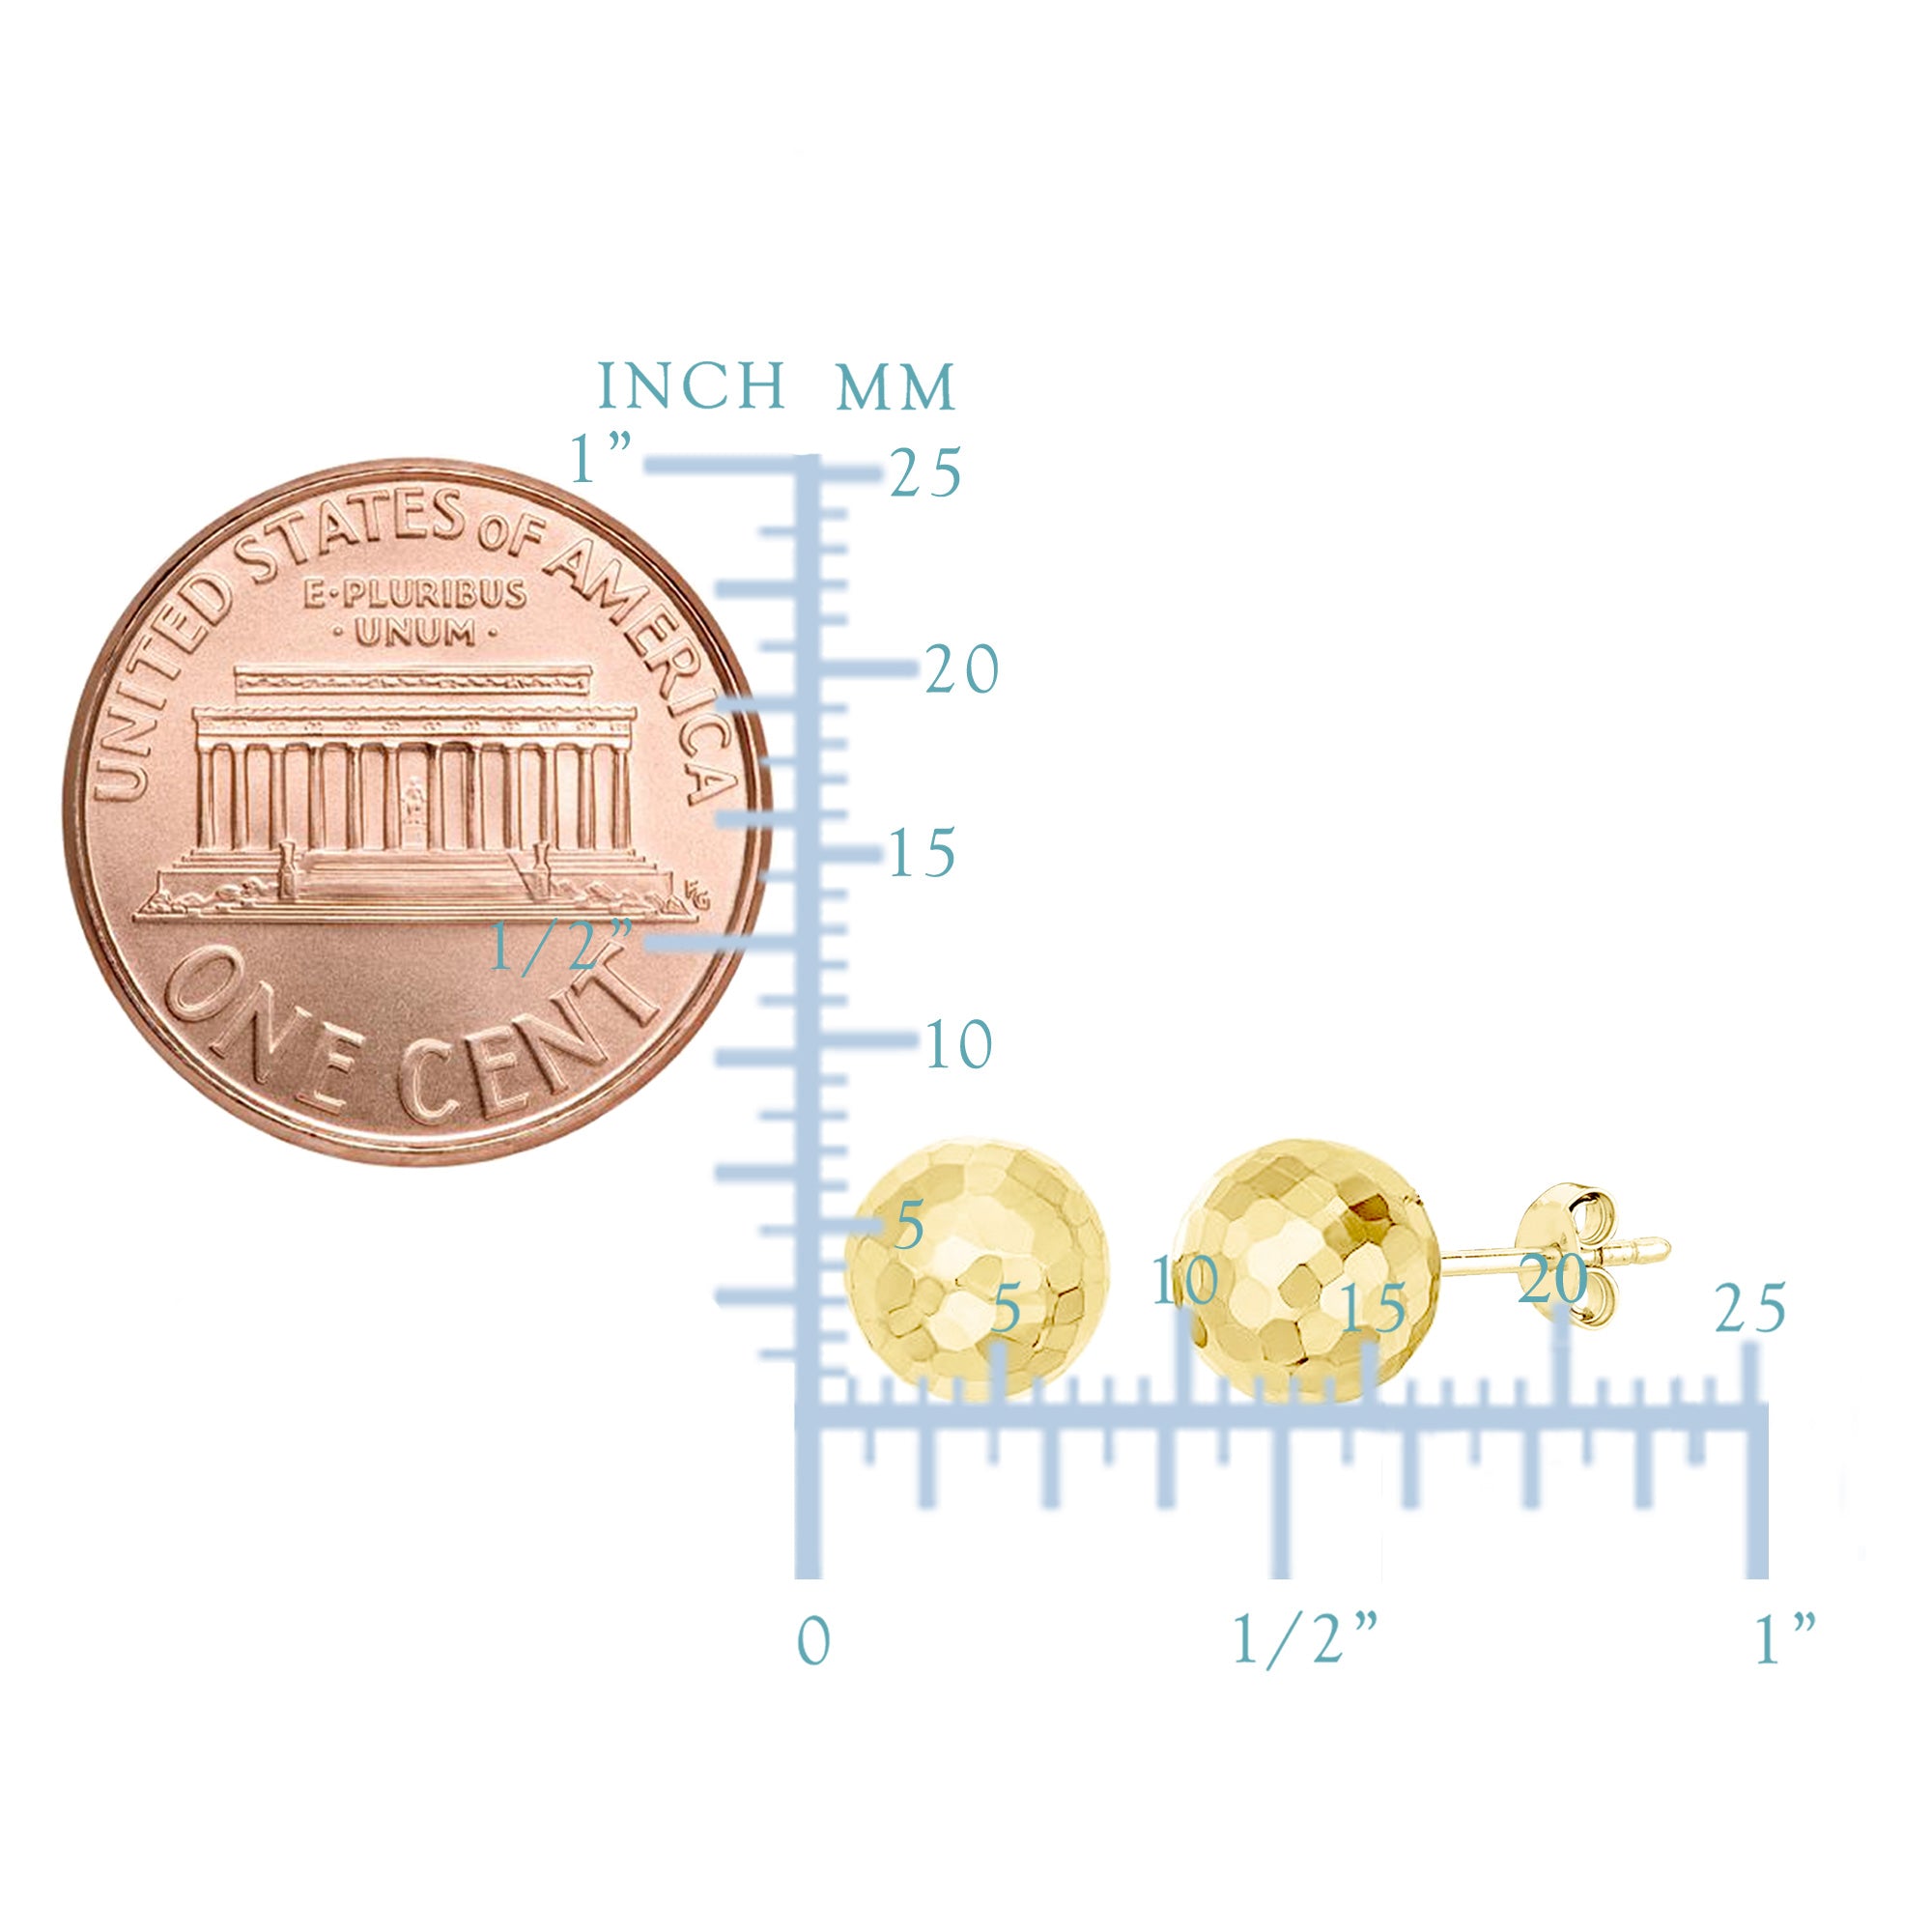 Kugel-Ohrstecker aus 14-karätigem Gold mit gehämmerter Oberfläche, 7 mm feiner Designerschmuck für Männer und Frauen